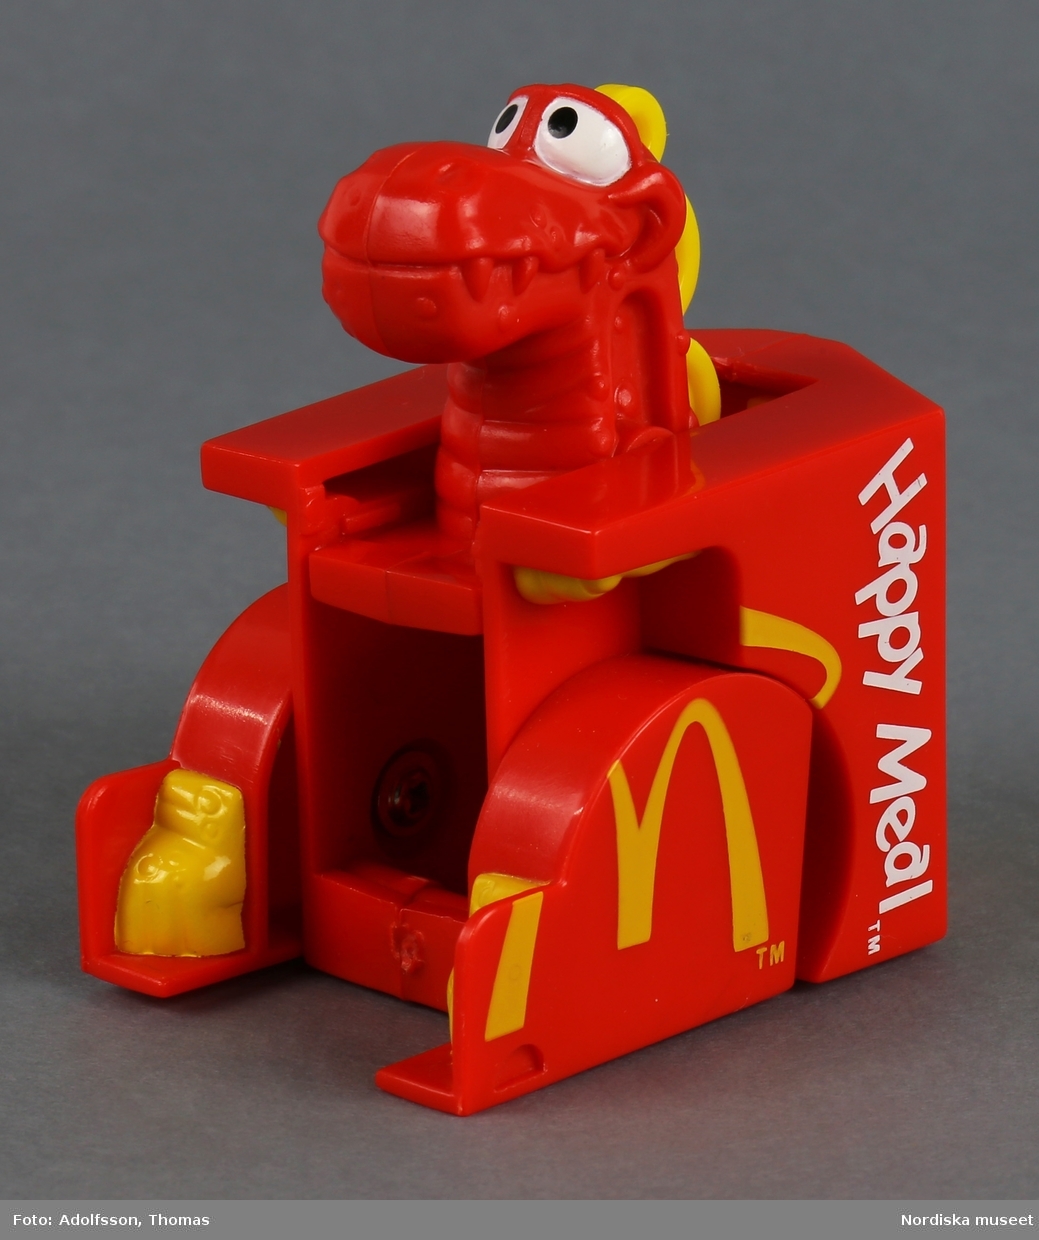 Leksak i form av en röd matkartong för hamburgare. På utsidan finns texten "Happy Meal" och symbolen M som står för matkedjan McDonald's. Sidorna går att fälla ut, varvid en djurfigur med huvud och tassar framträder.